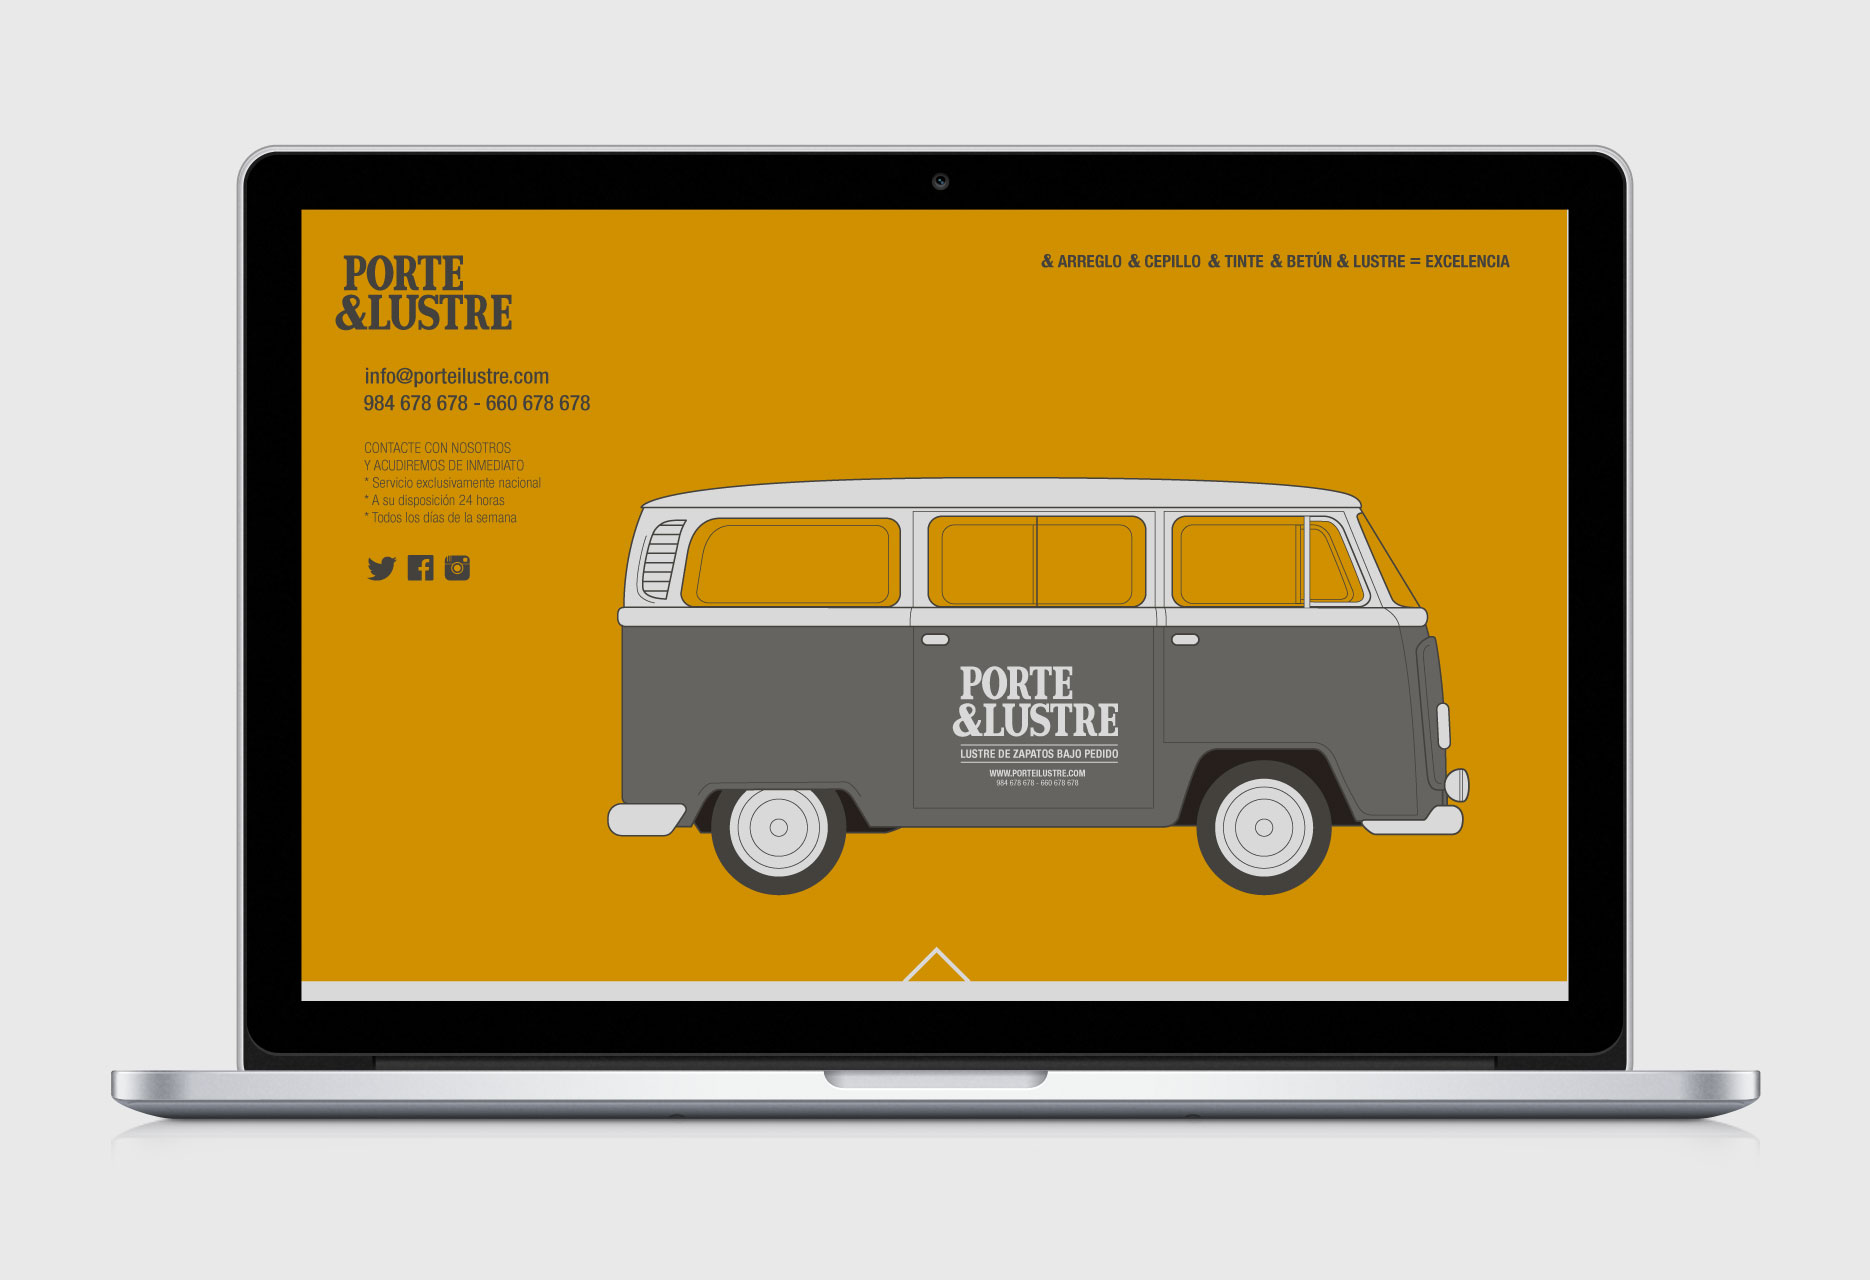 Shoeshiner brand design PORTE&LUSTRE - web design / branding / illustration - 2014